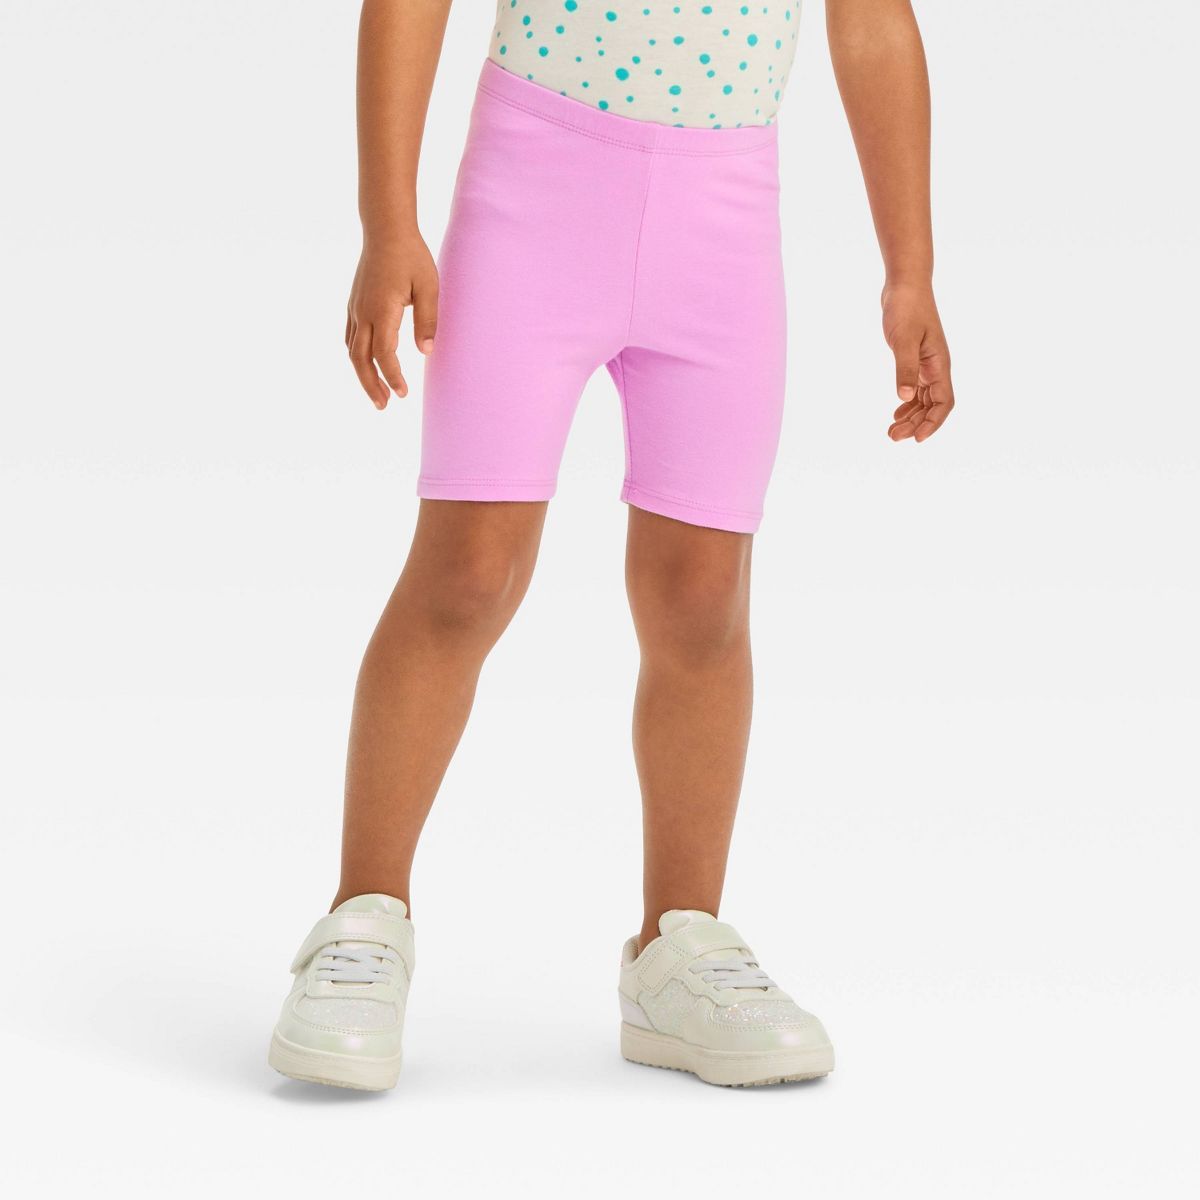 Toddler Girls' Verve Shorts - Cat & Jack™ Violet 2T | Target